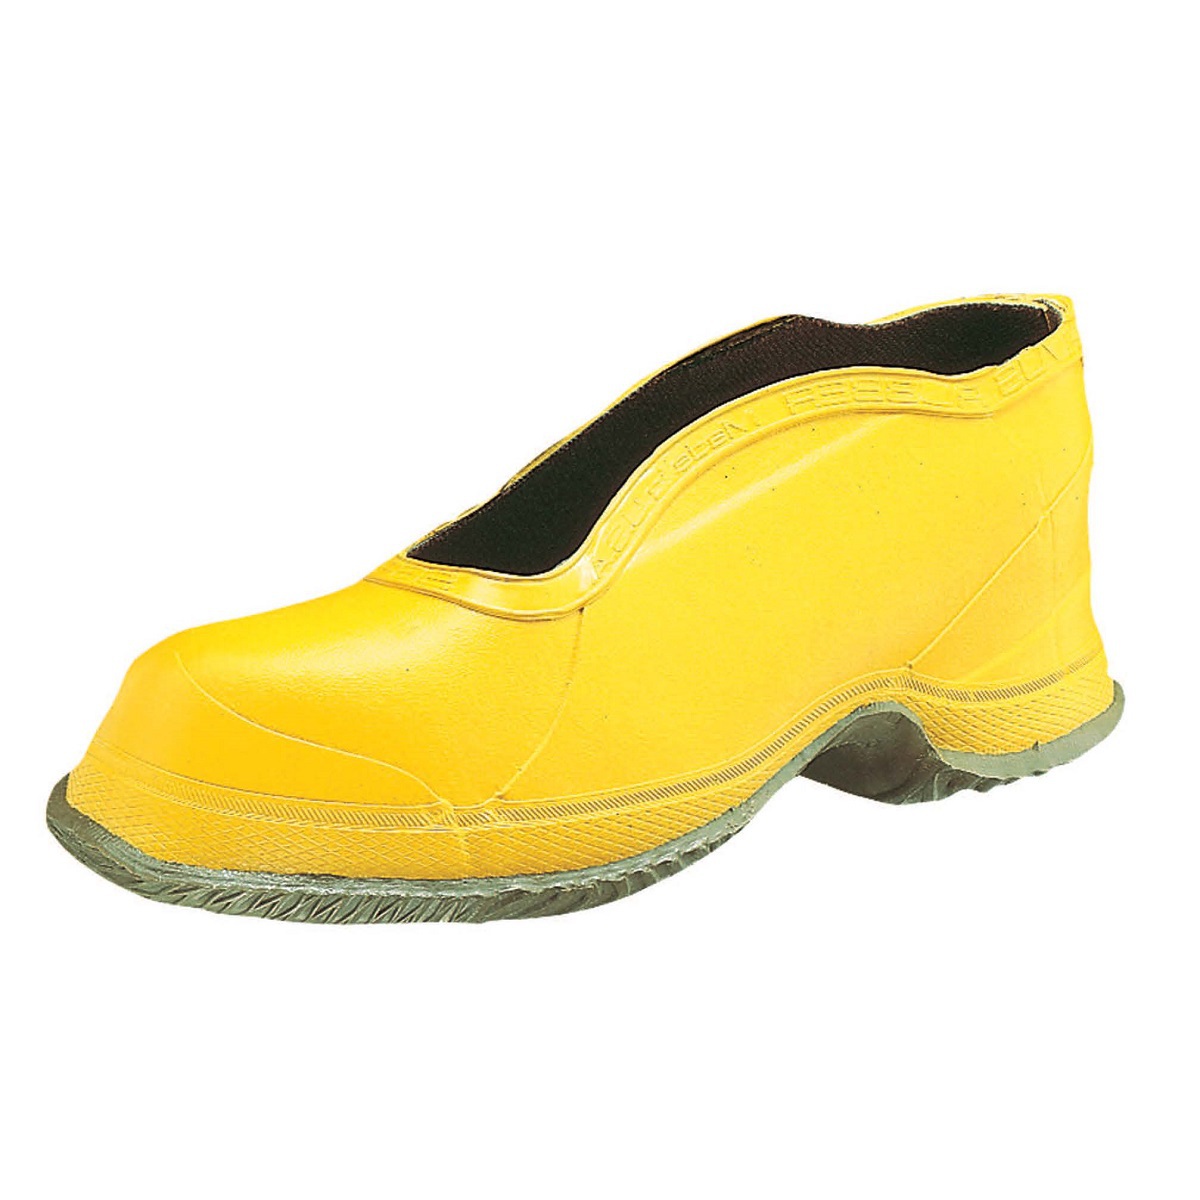 Honeywell Size 13 Salisbury Yellow Rubber Deep Heel Storm Overshoes With Fabric Lining